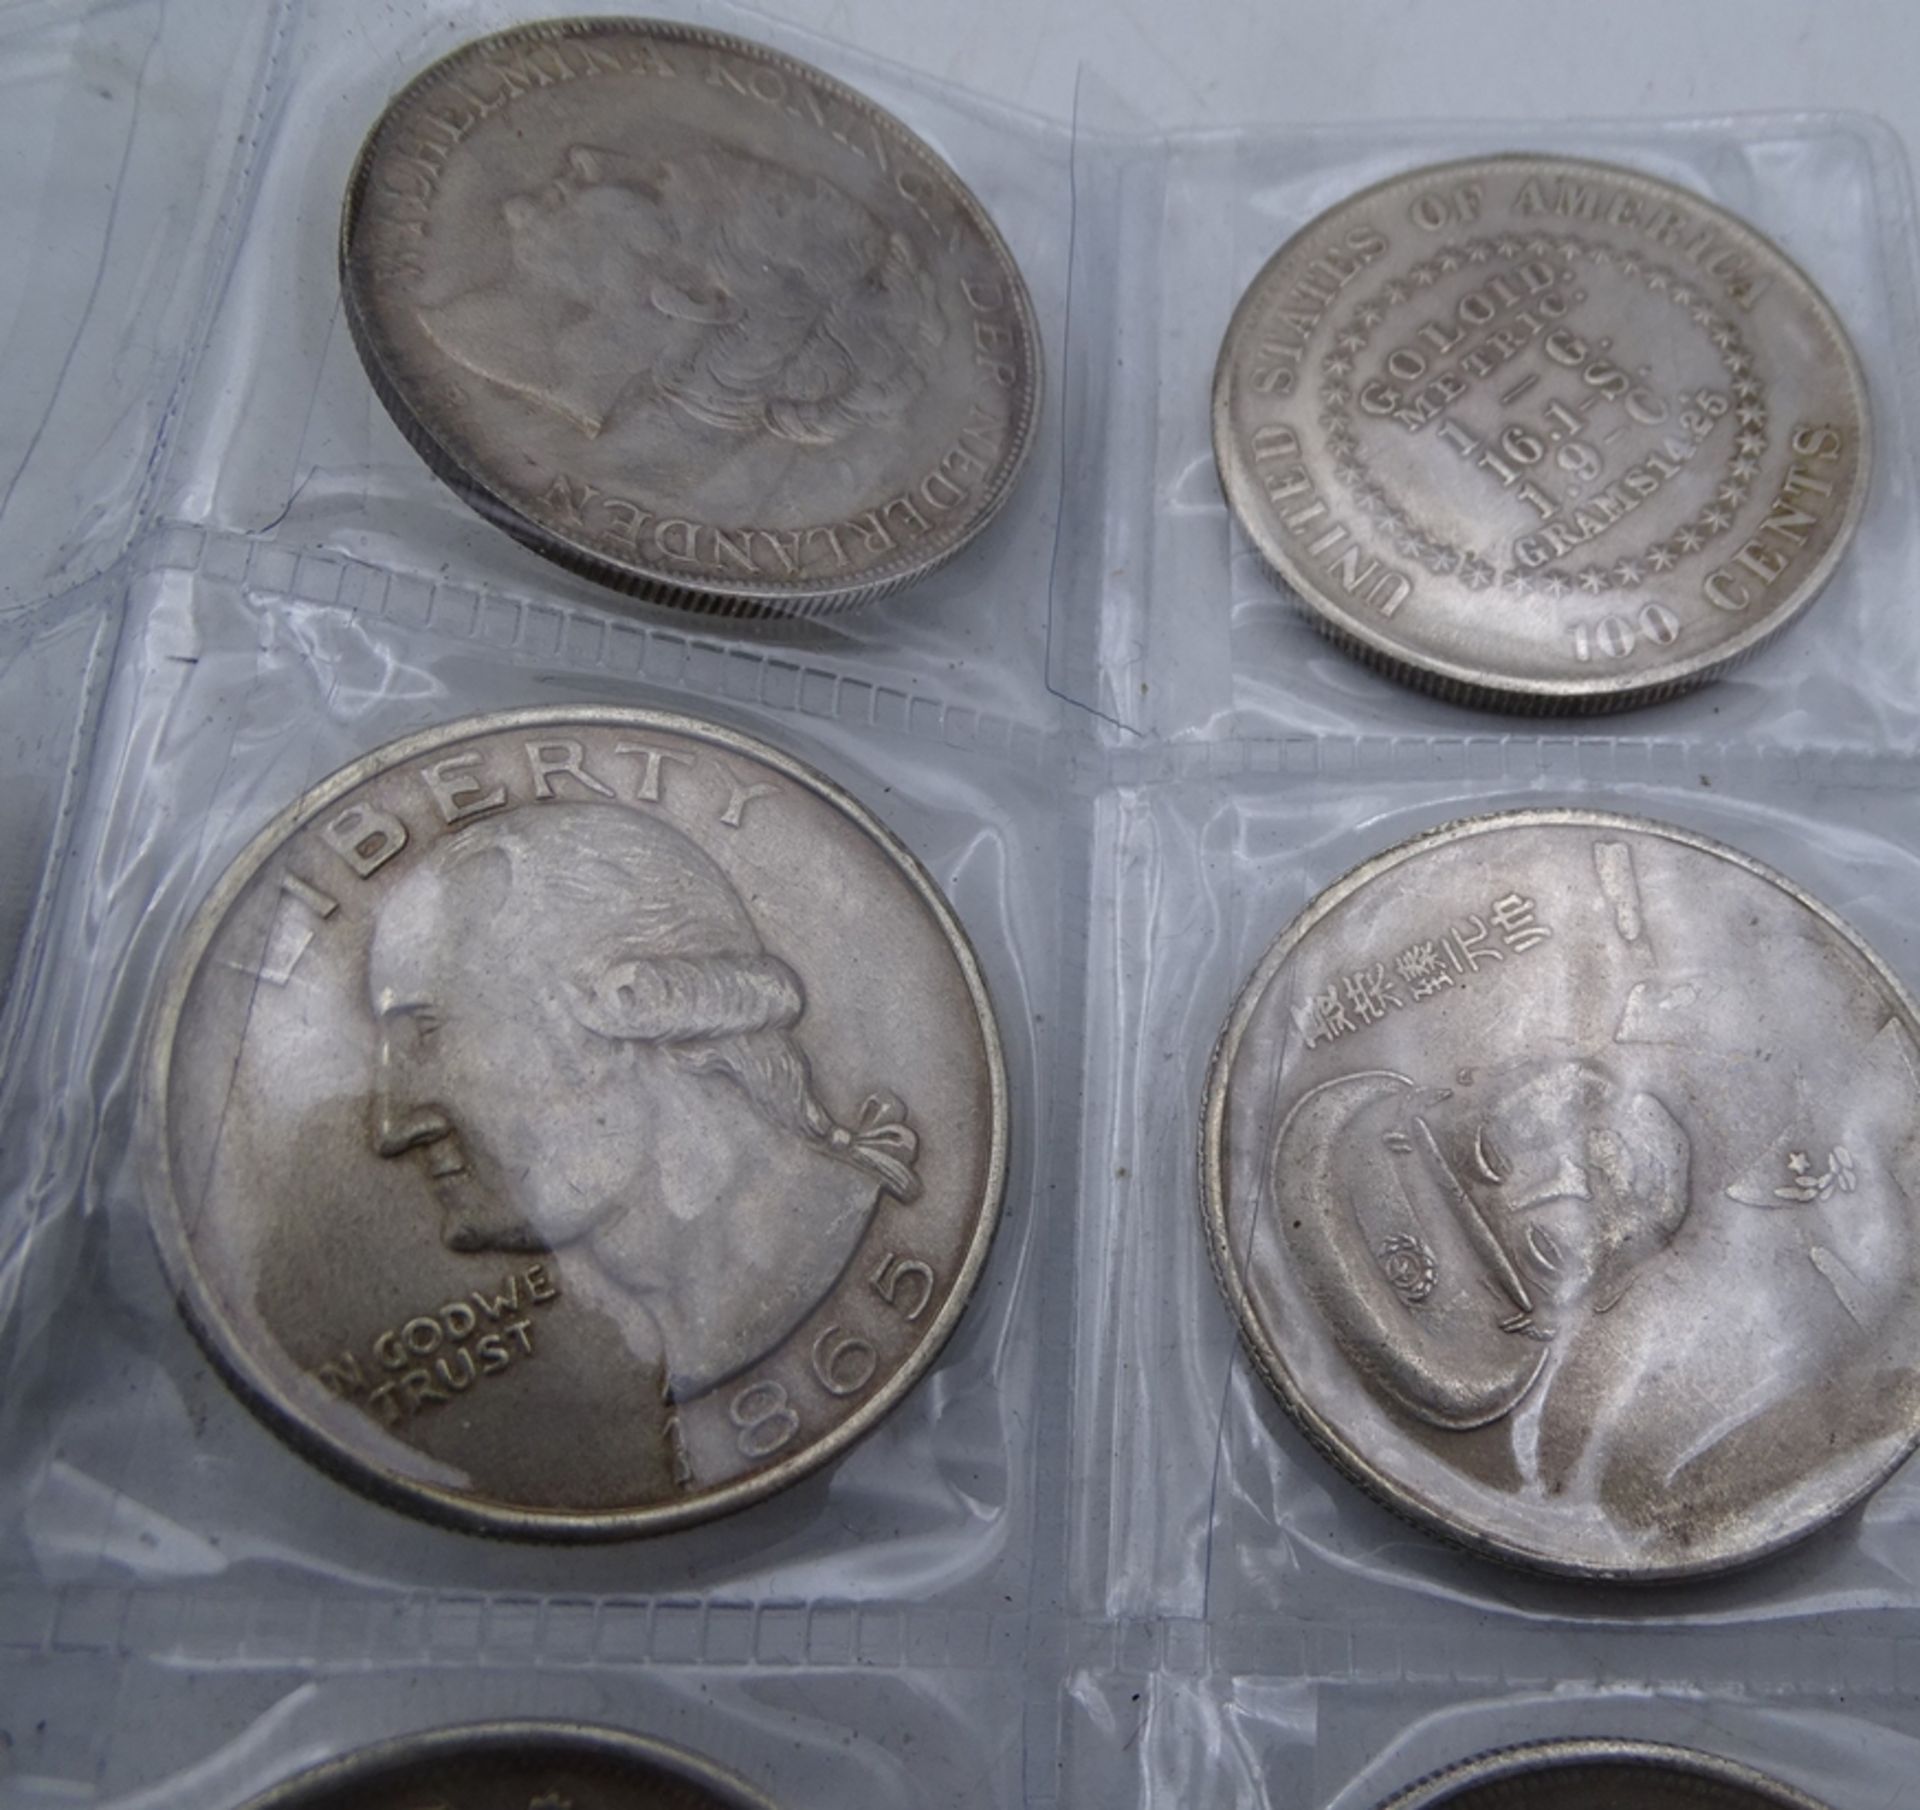 11x alte Silbermünzen-Kopien, Dollar, Rubel, Gulden, keines ist aus Silber, alle Fakes und versilbe - Bild 4 aus 8